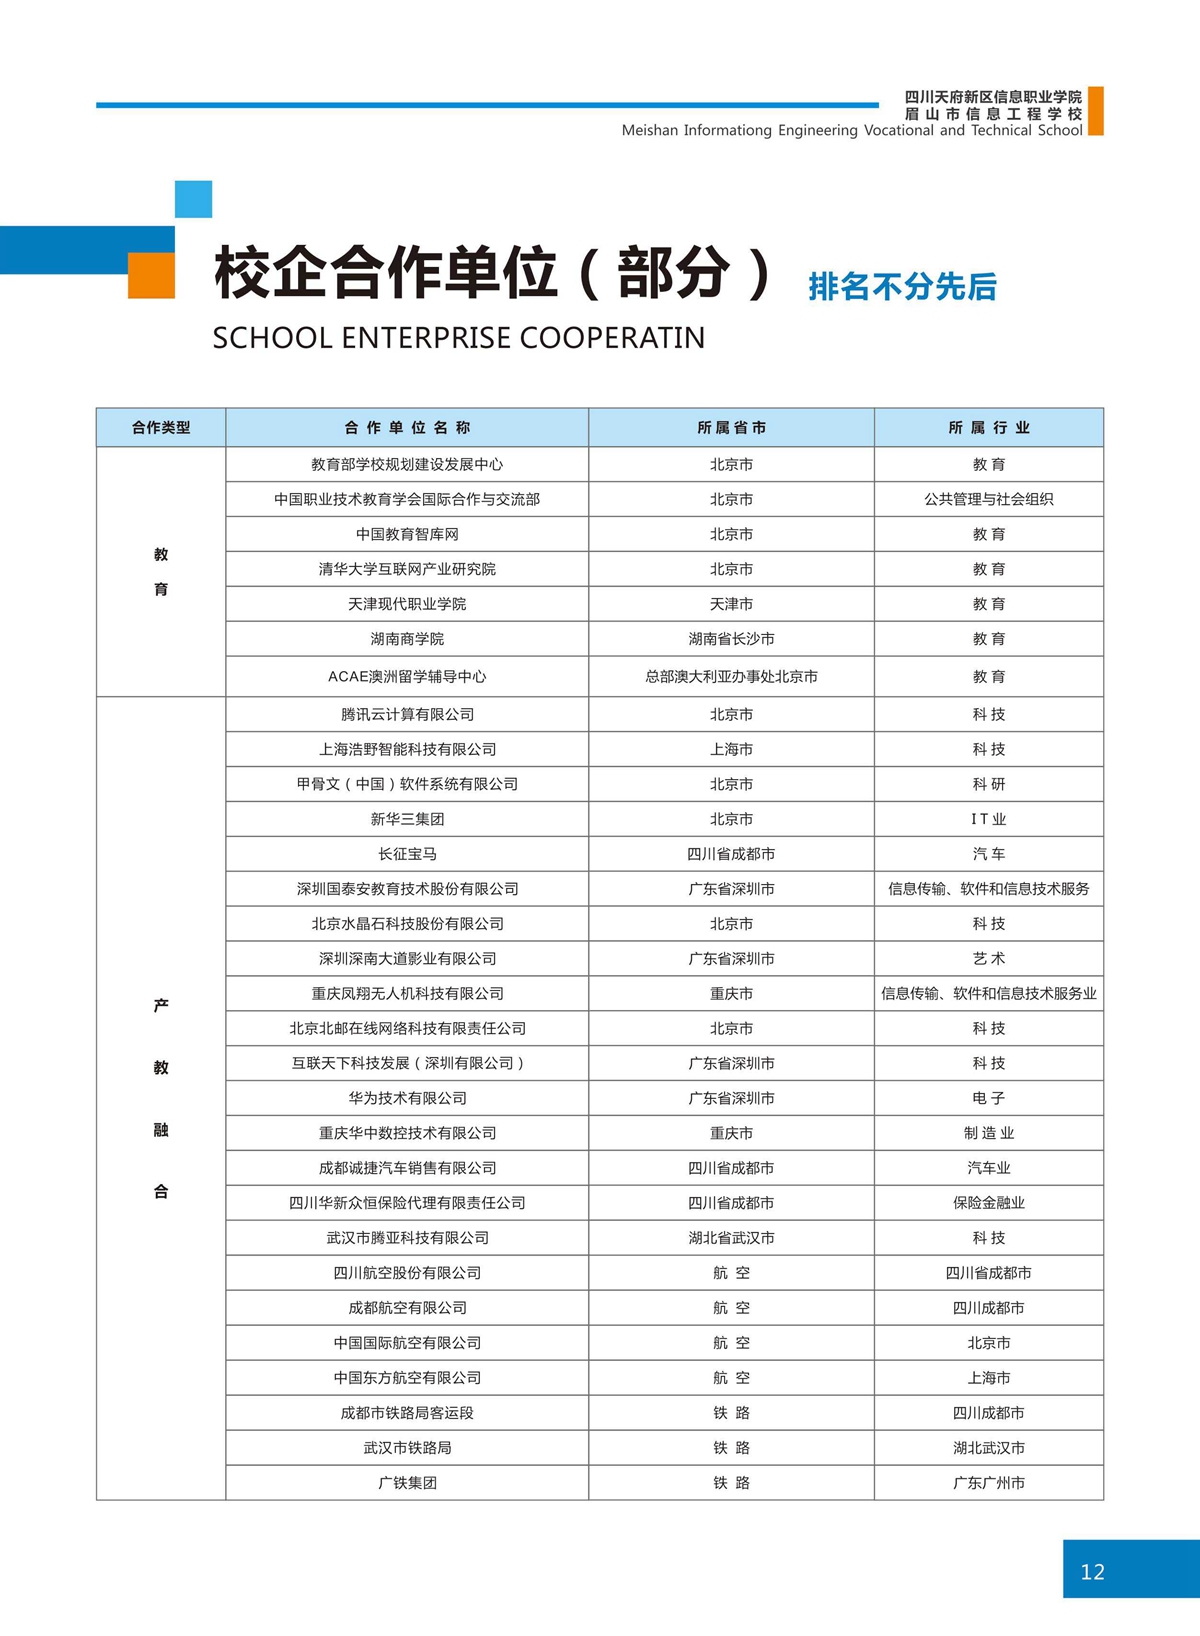 四川天府新区信息职业学院校企合作就业单位名单